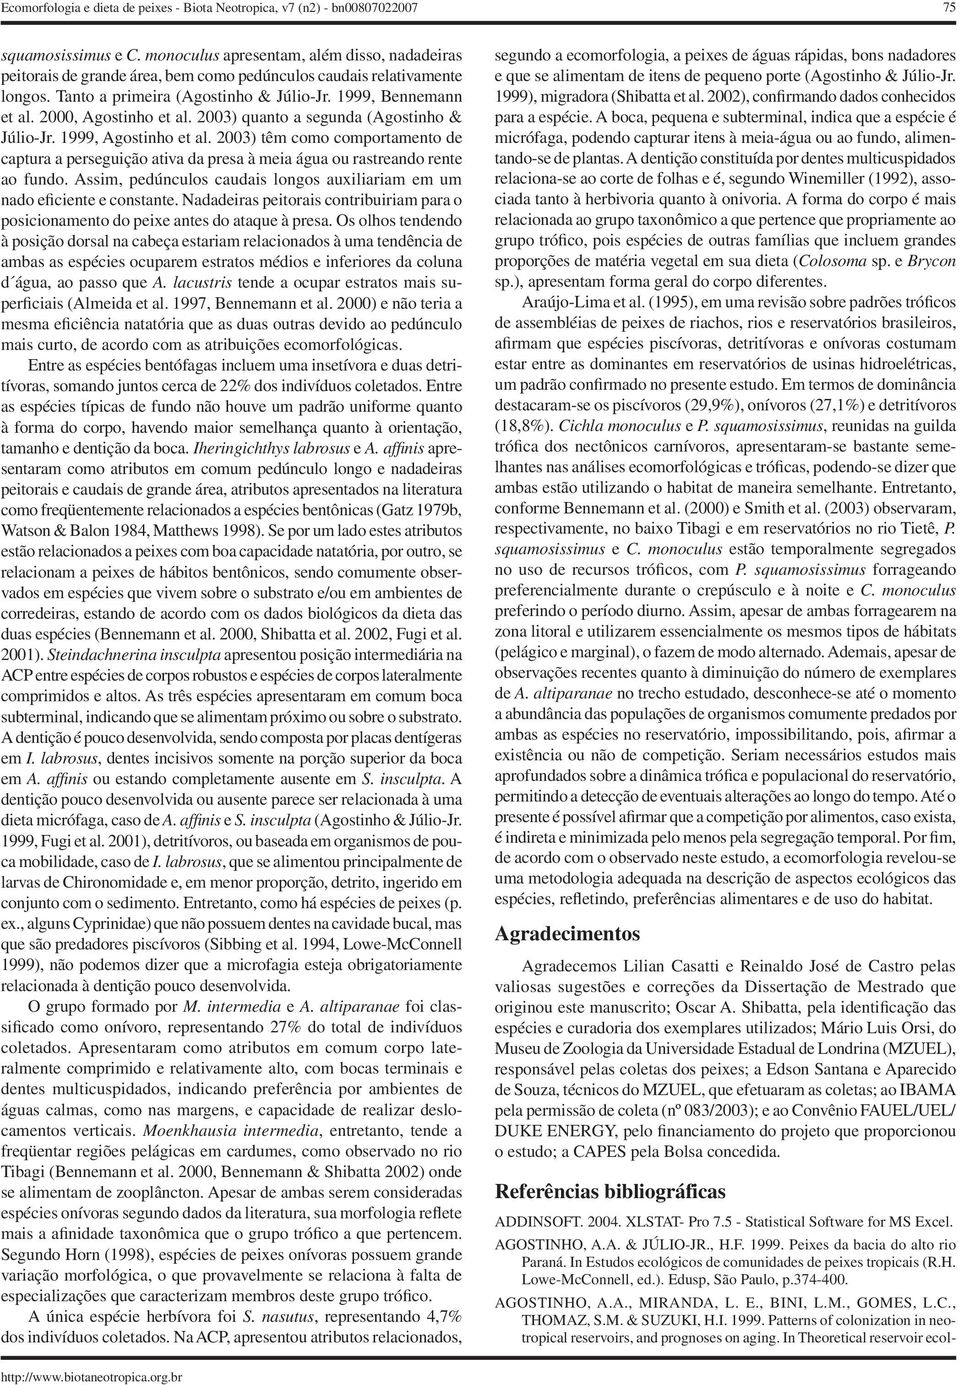 2000, Agostinho et al. 2003) quanto a segunda (Agostinho & Júlio-Jr. 1999, Agostinho et al.